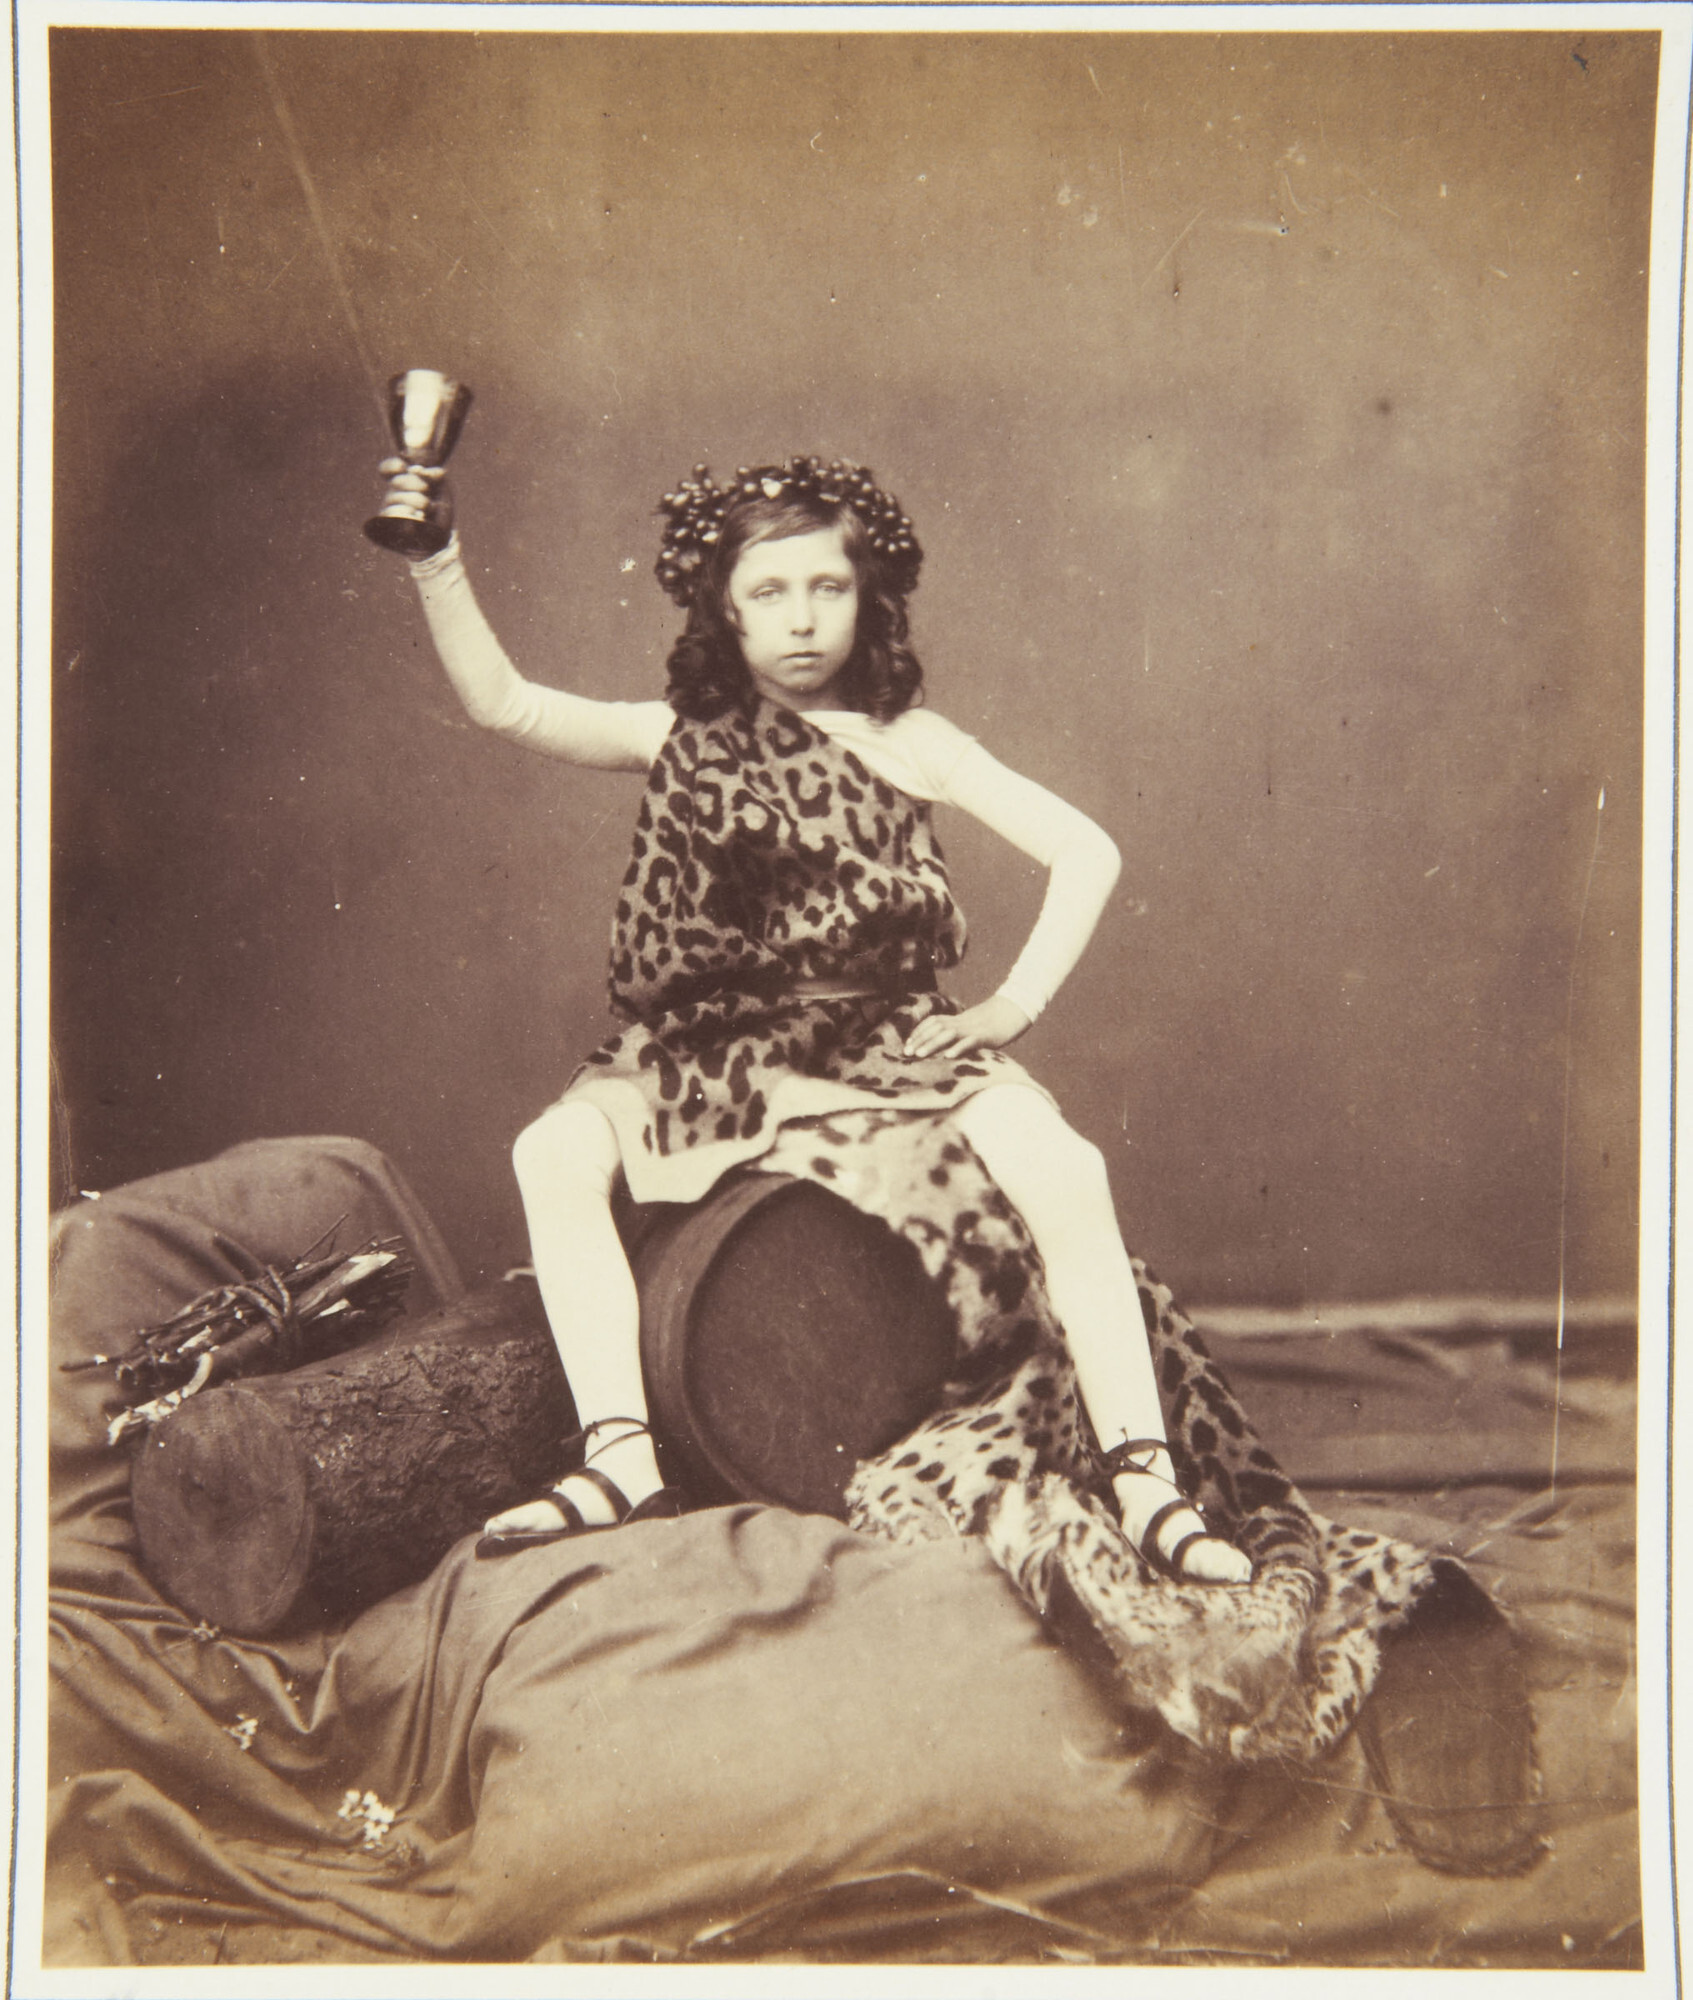 Принц Альфред (впоследствии герцог Саксен-Кобург-Готский) в наряде Бахуса представляет образ Осени для представления «Картина времён года», 1854. Фотограф Роджер Фентон